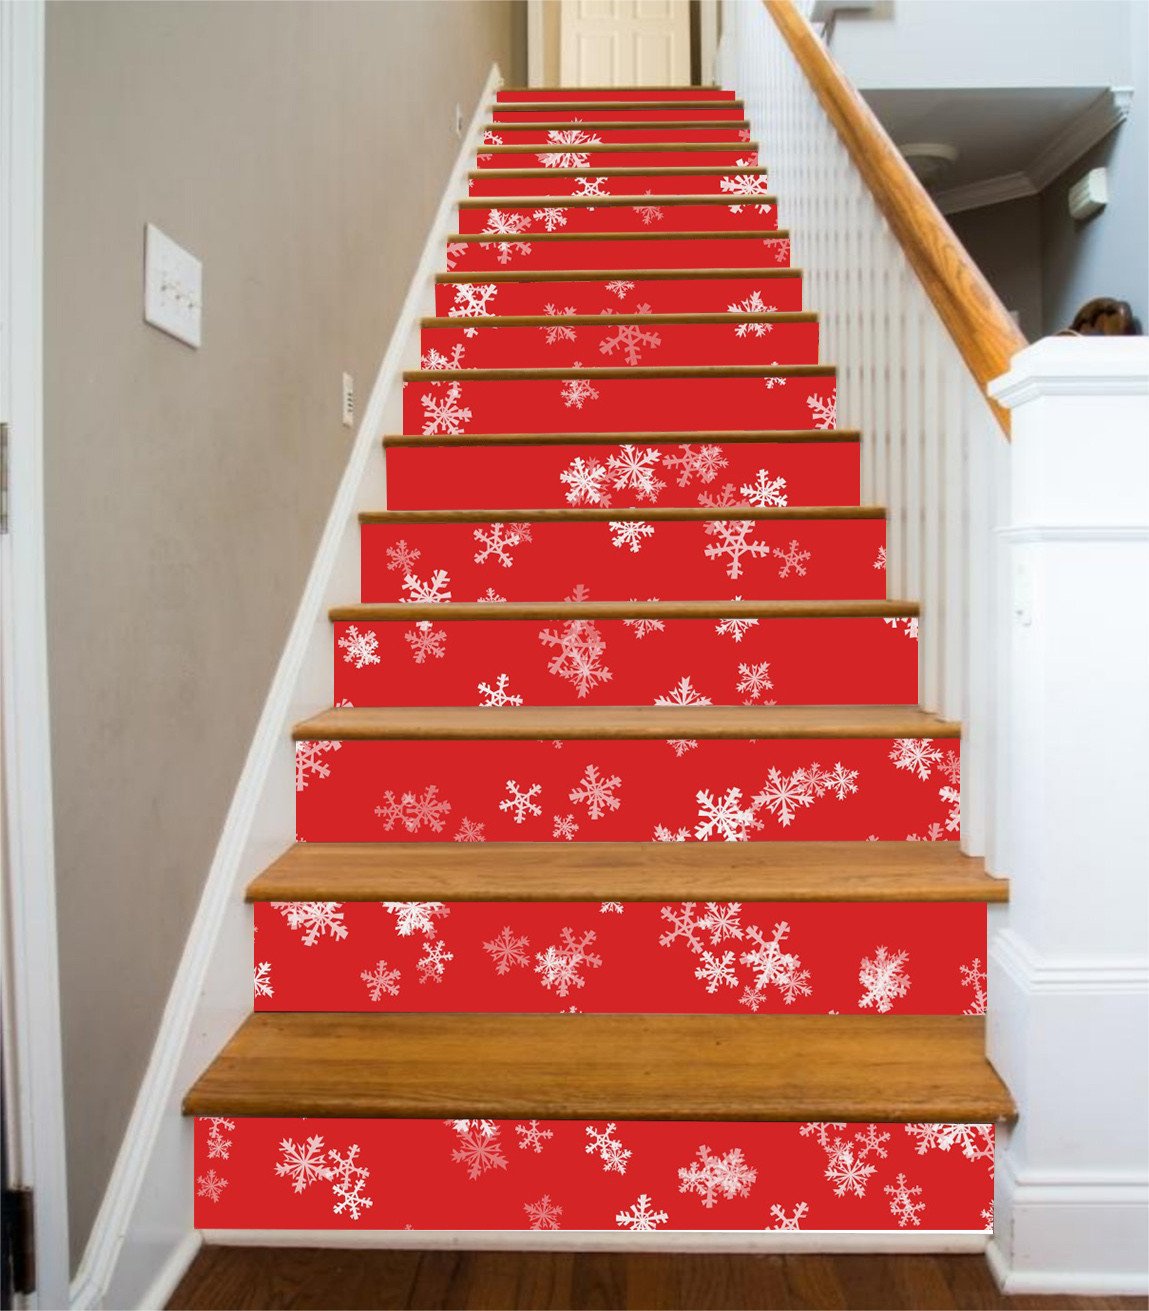 3D Snowflake Patterns 509 Stair Risers Wallpaper AJ Wallpaper 